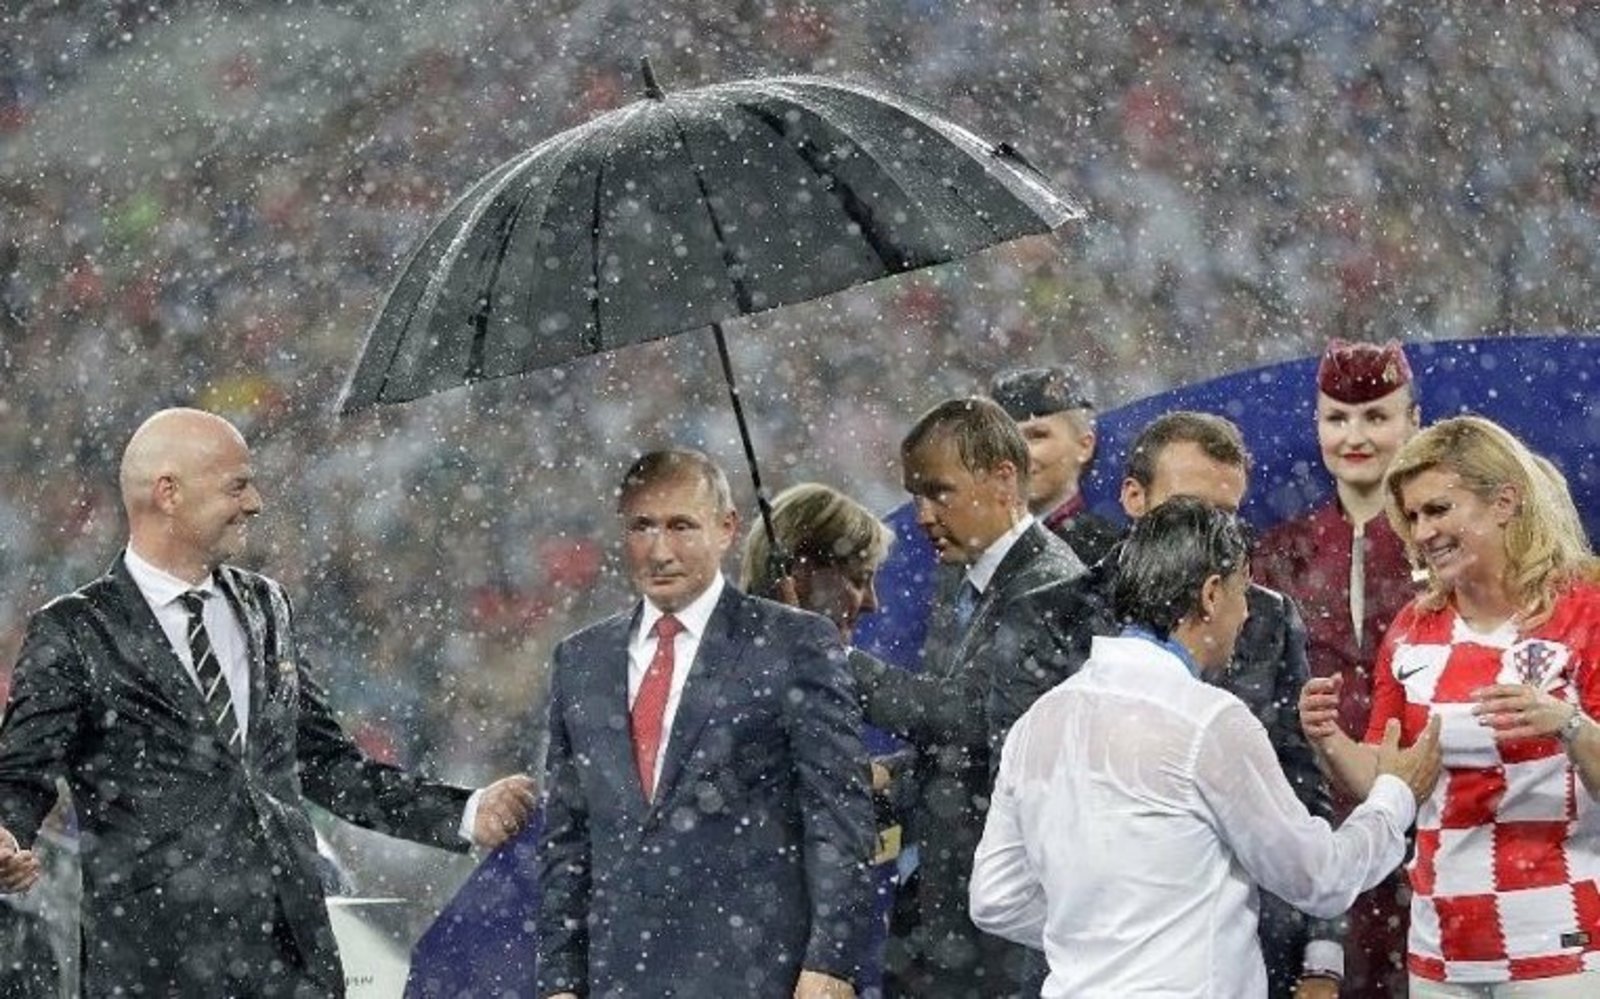 СМИ обратили внимание на зонт над Путиным после финала ЧМ